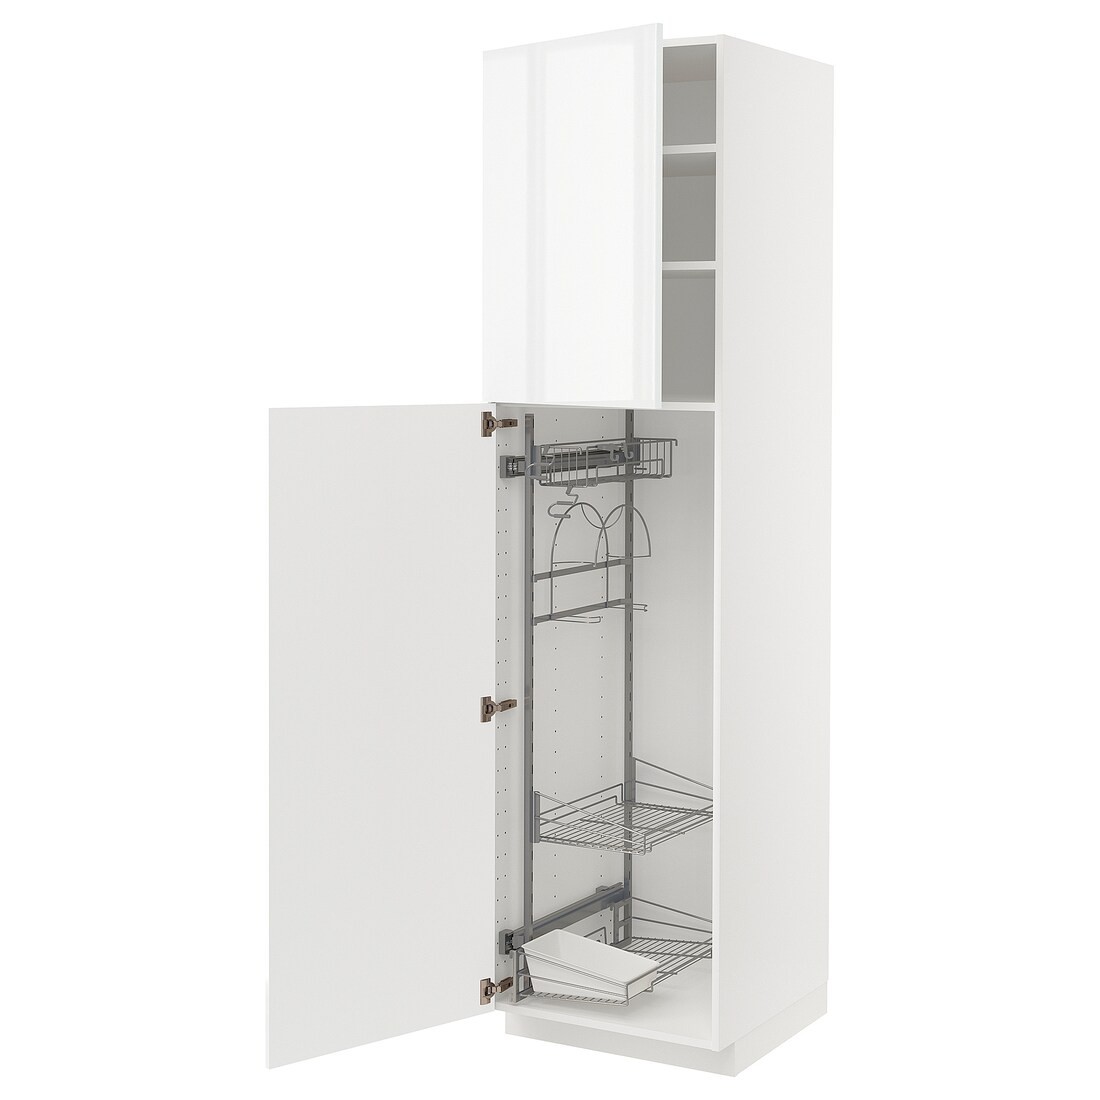 METOD МЕТОД Высокий шкаф с отделением для аксессуаров для уборки, белый / Ringhult светло-серый, 60x60x220 см